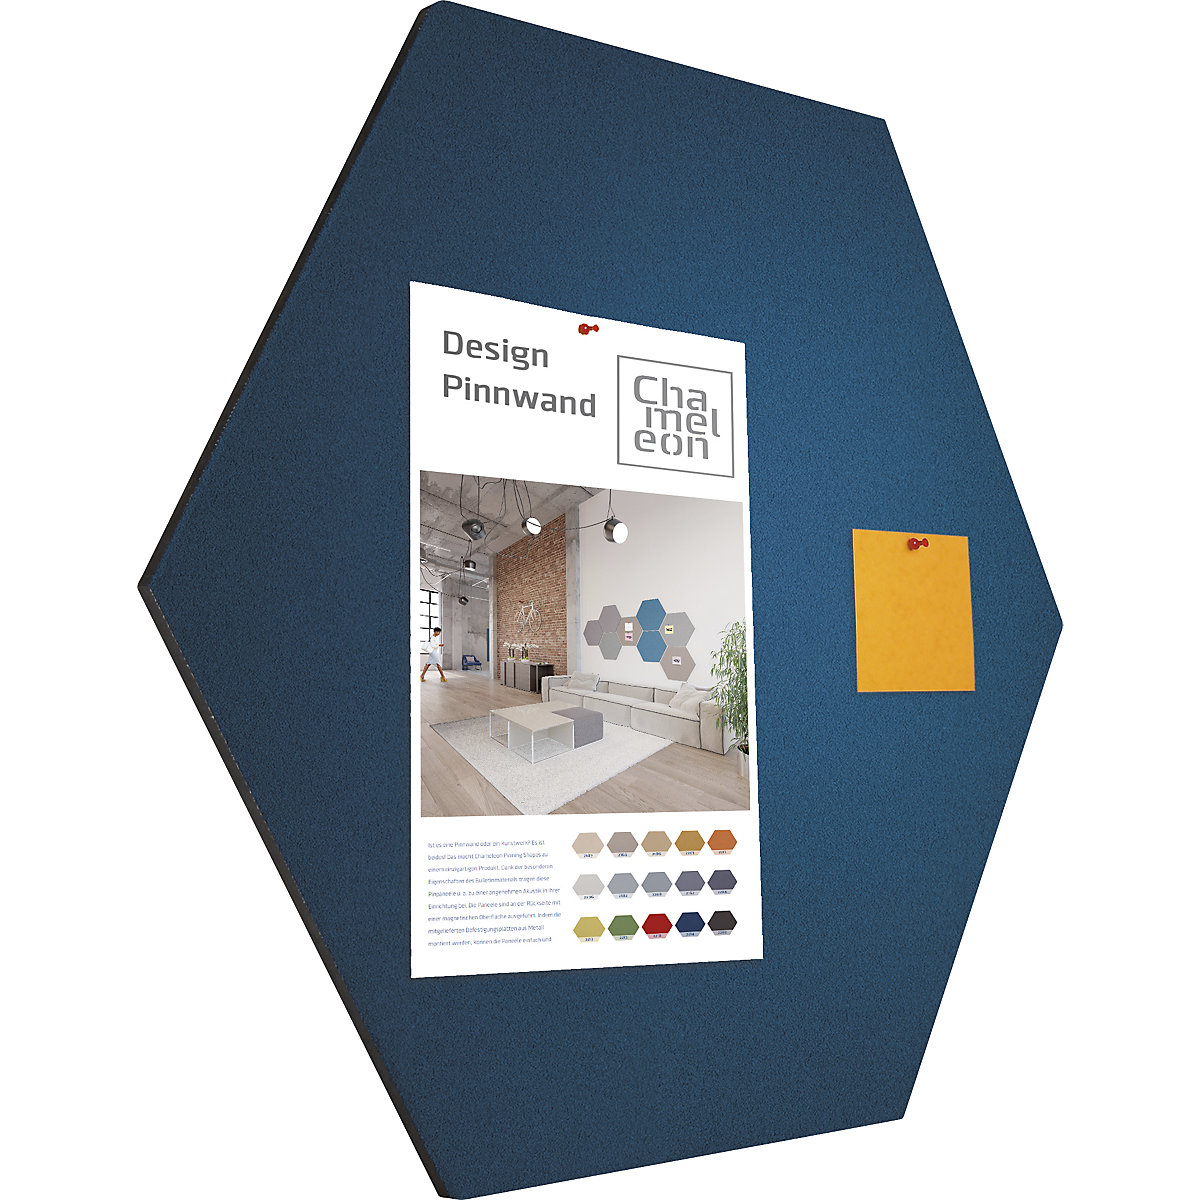 Hexagonal designer pin board – Chameleon (Product illustration 62)-61